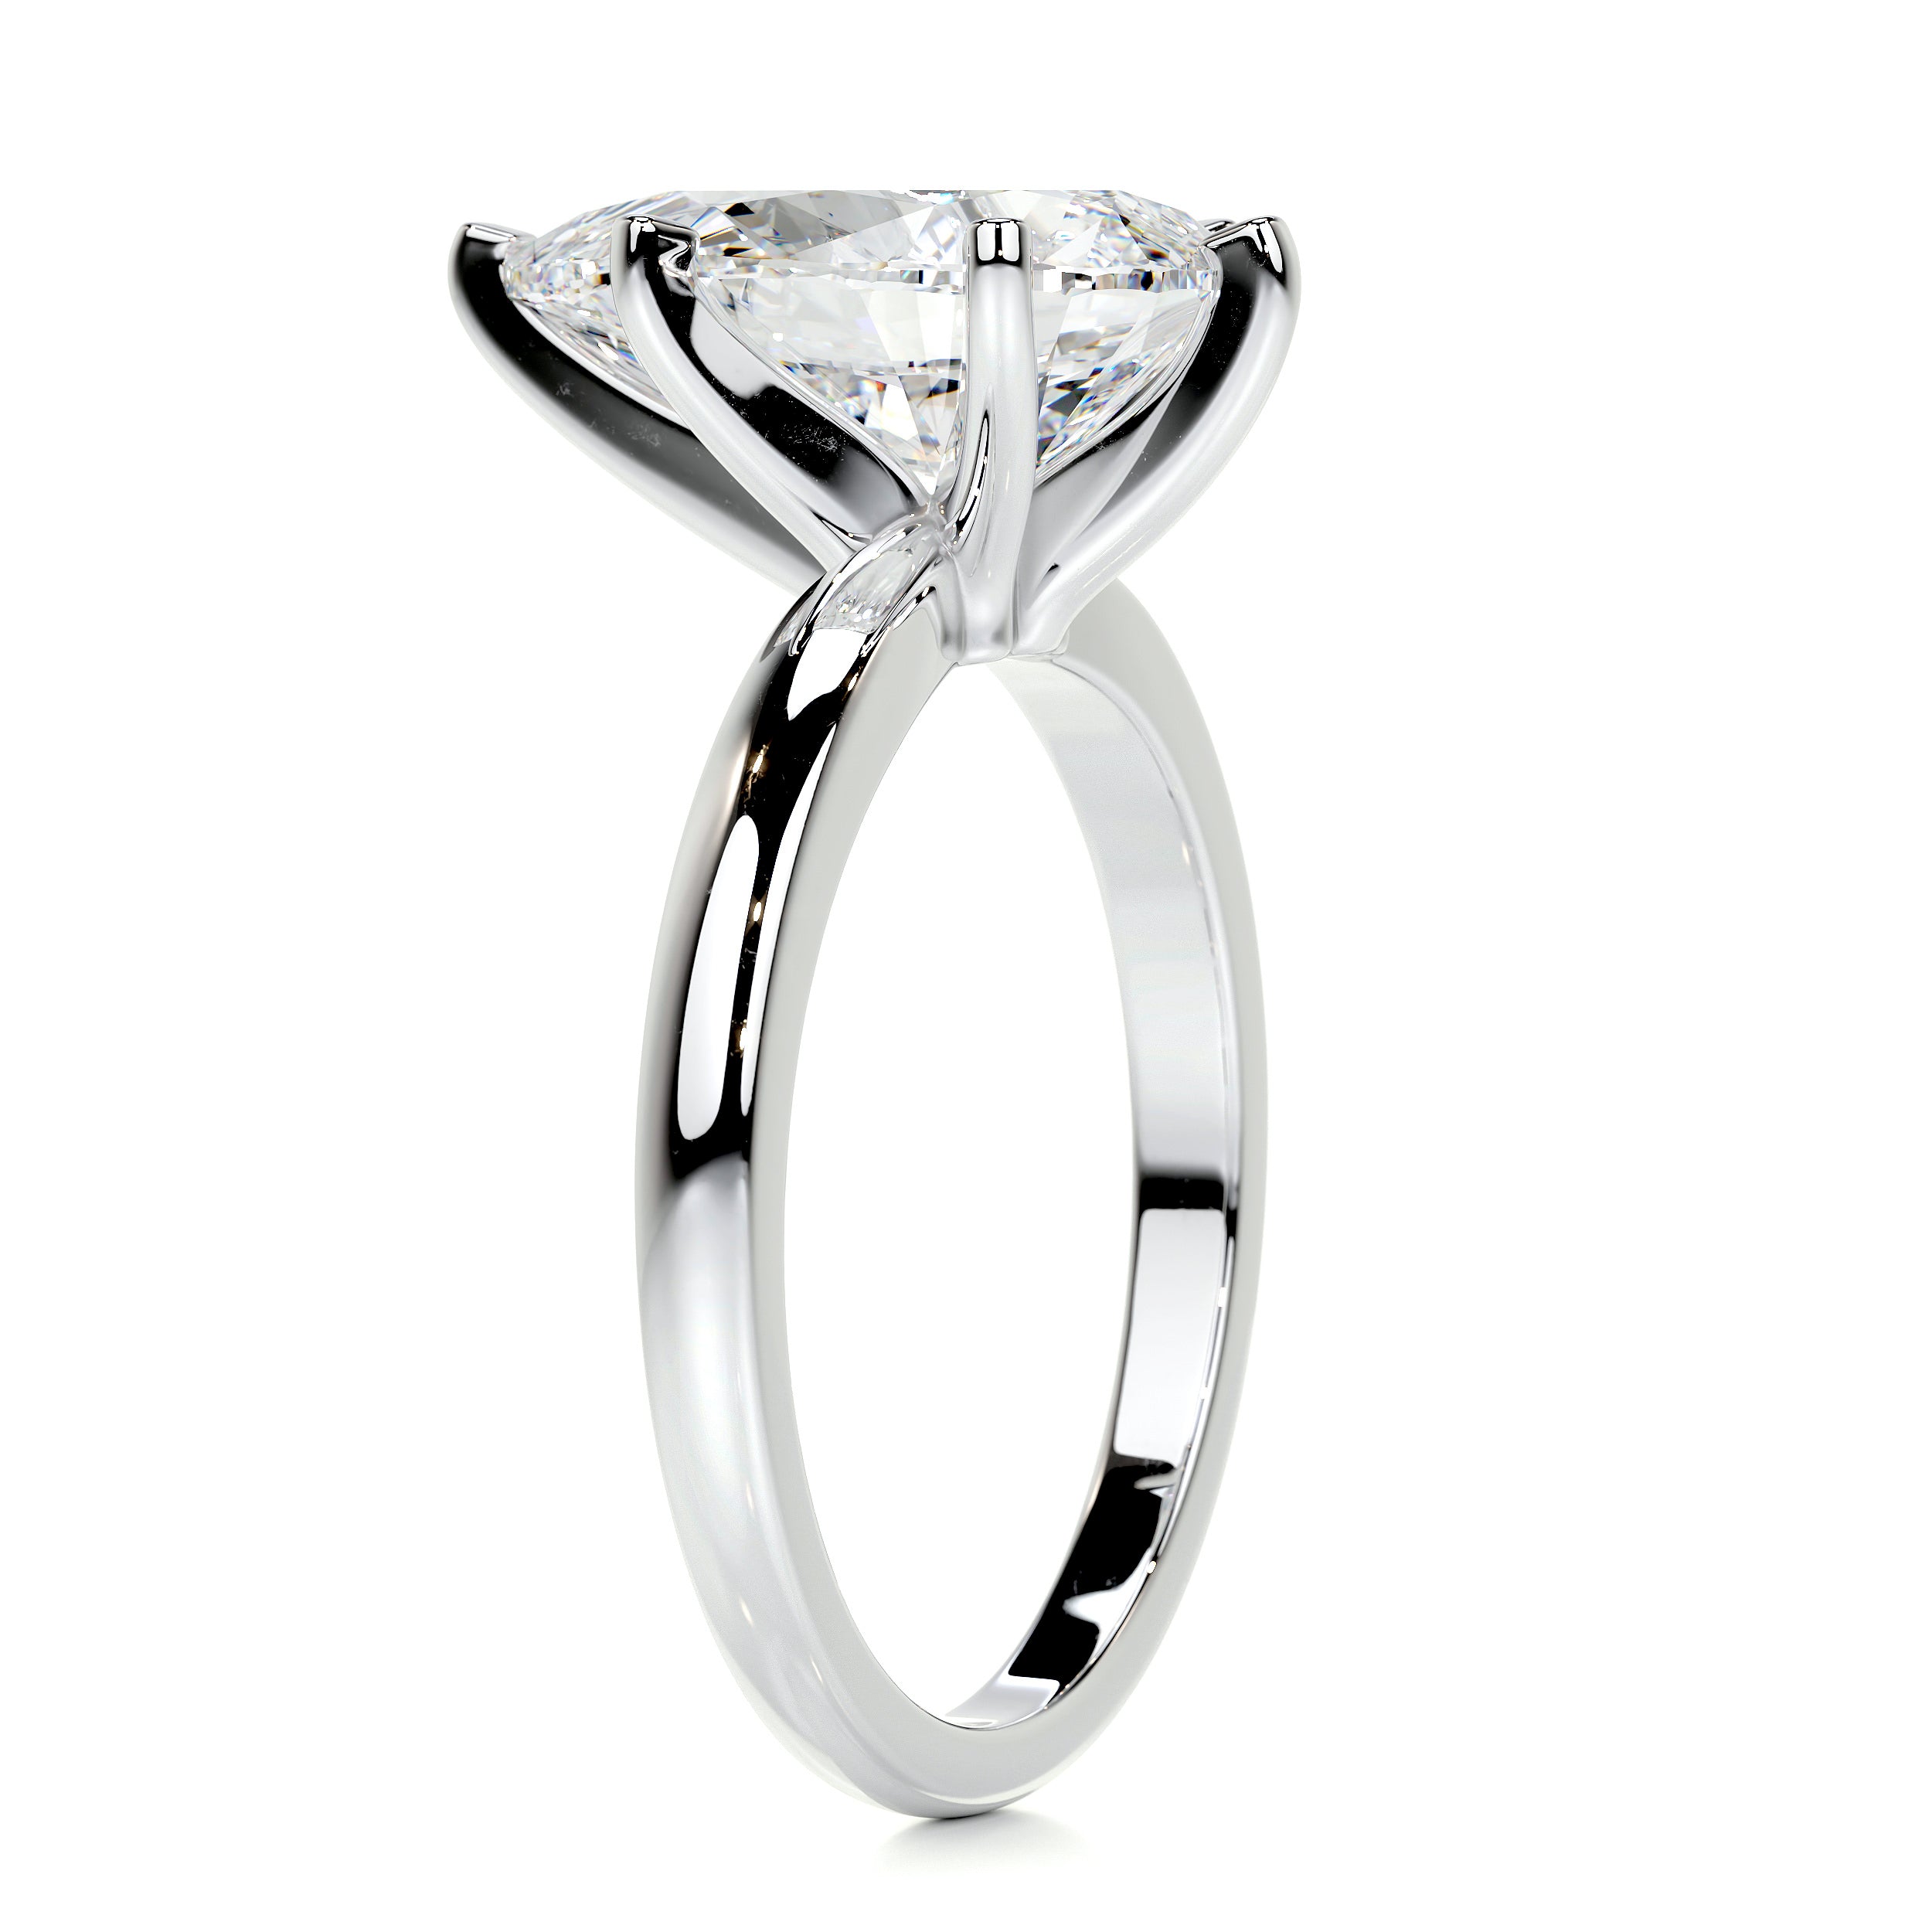 Adaline Diamond Engagement Ring   (1 Carat) -14K White Gold